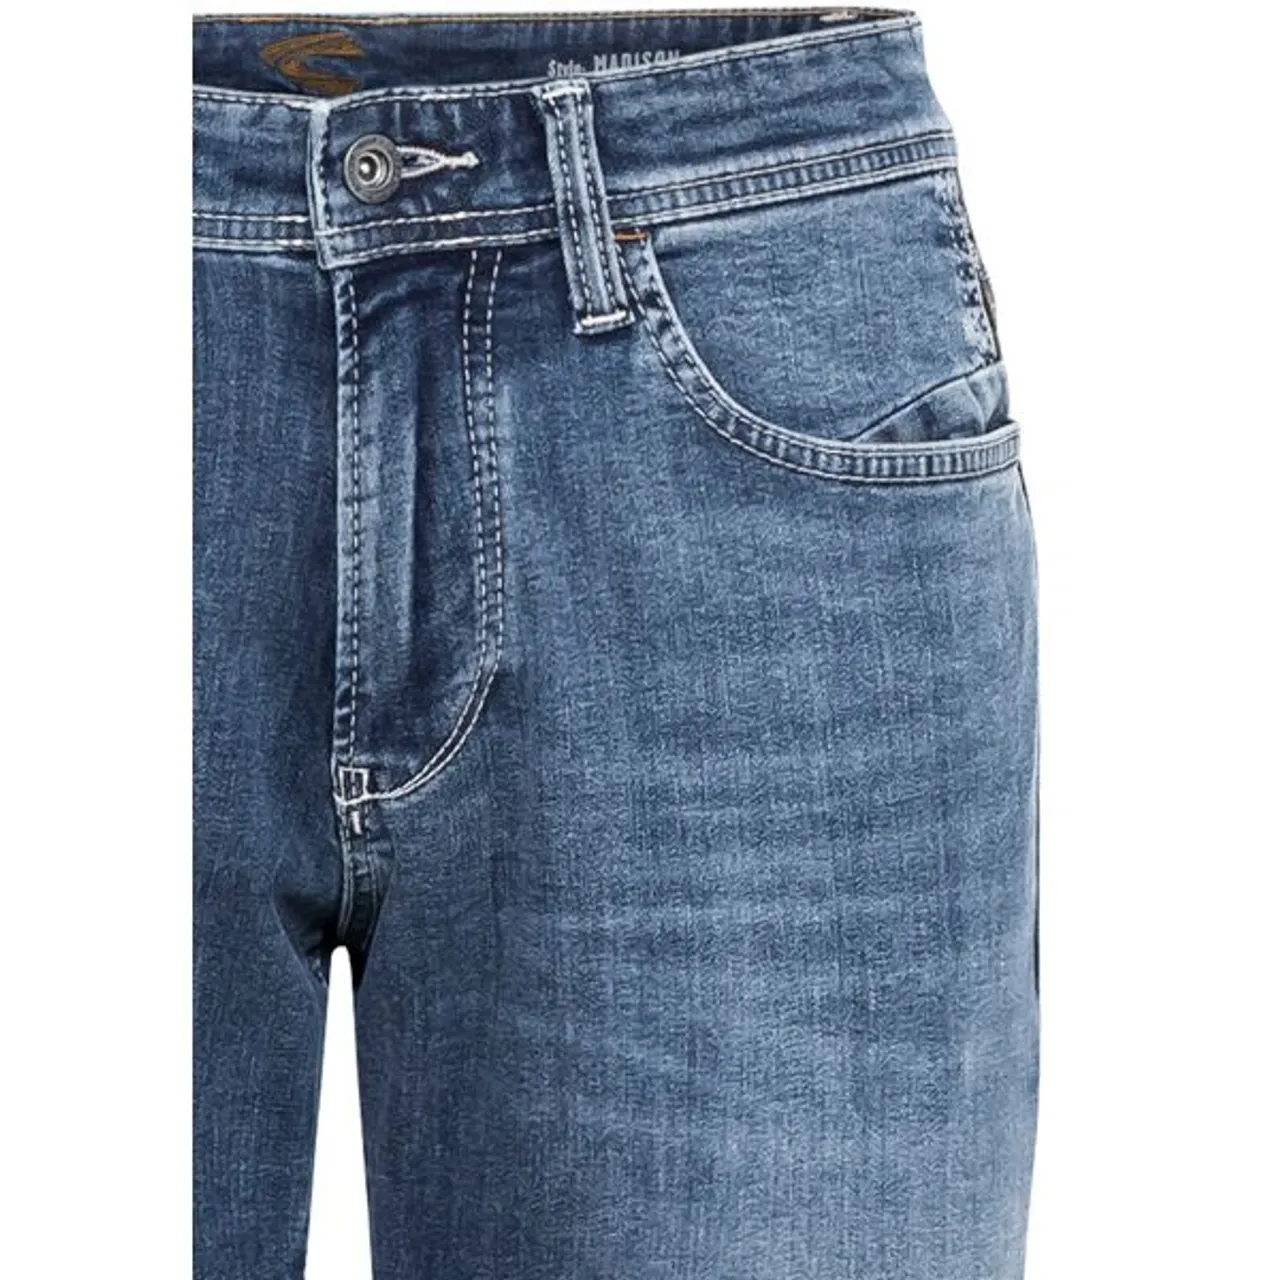 5-Pocket-Jeans CAMEL ACTIVE "MADISON" Gr. 31, Länge 34, blau (mid blue) Herren Jeans 5-Pocket-Jeans leichter Used-Look